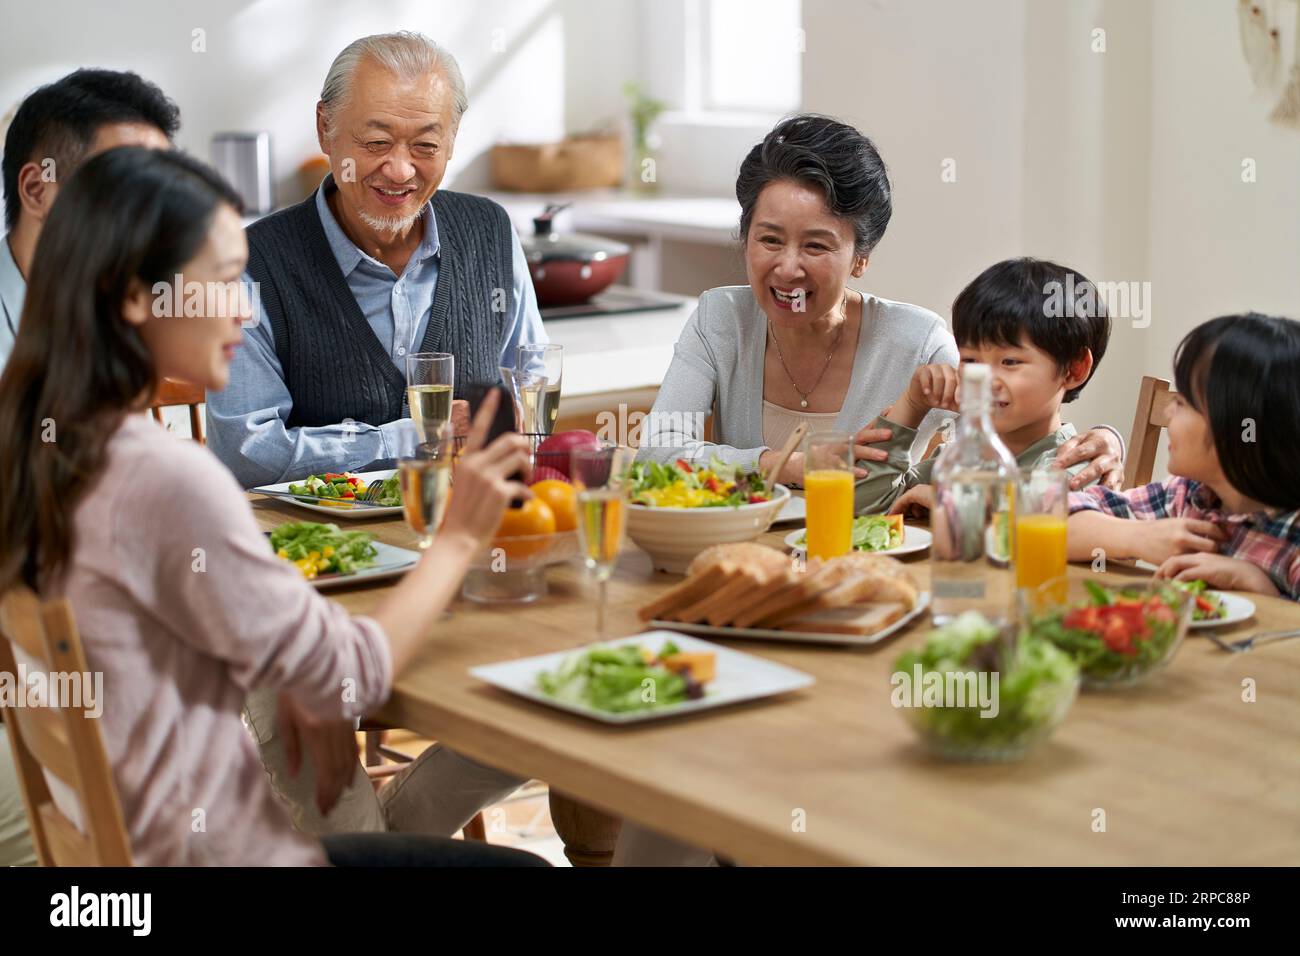 Junge asiatische Frau, die Bilder mit der Familie der 3. Generation auf dem Handy teilt, während sie zusammen isst Stockfoto